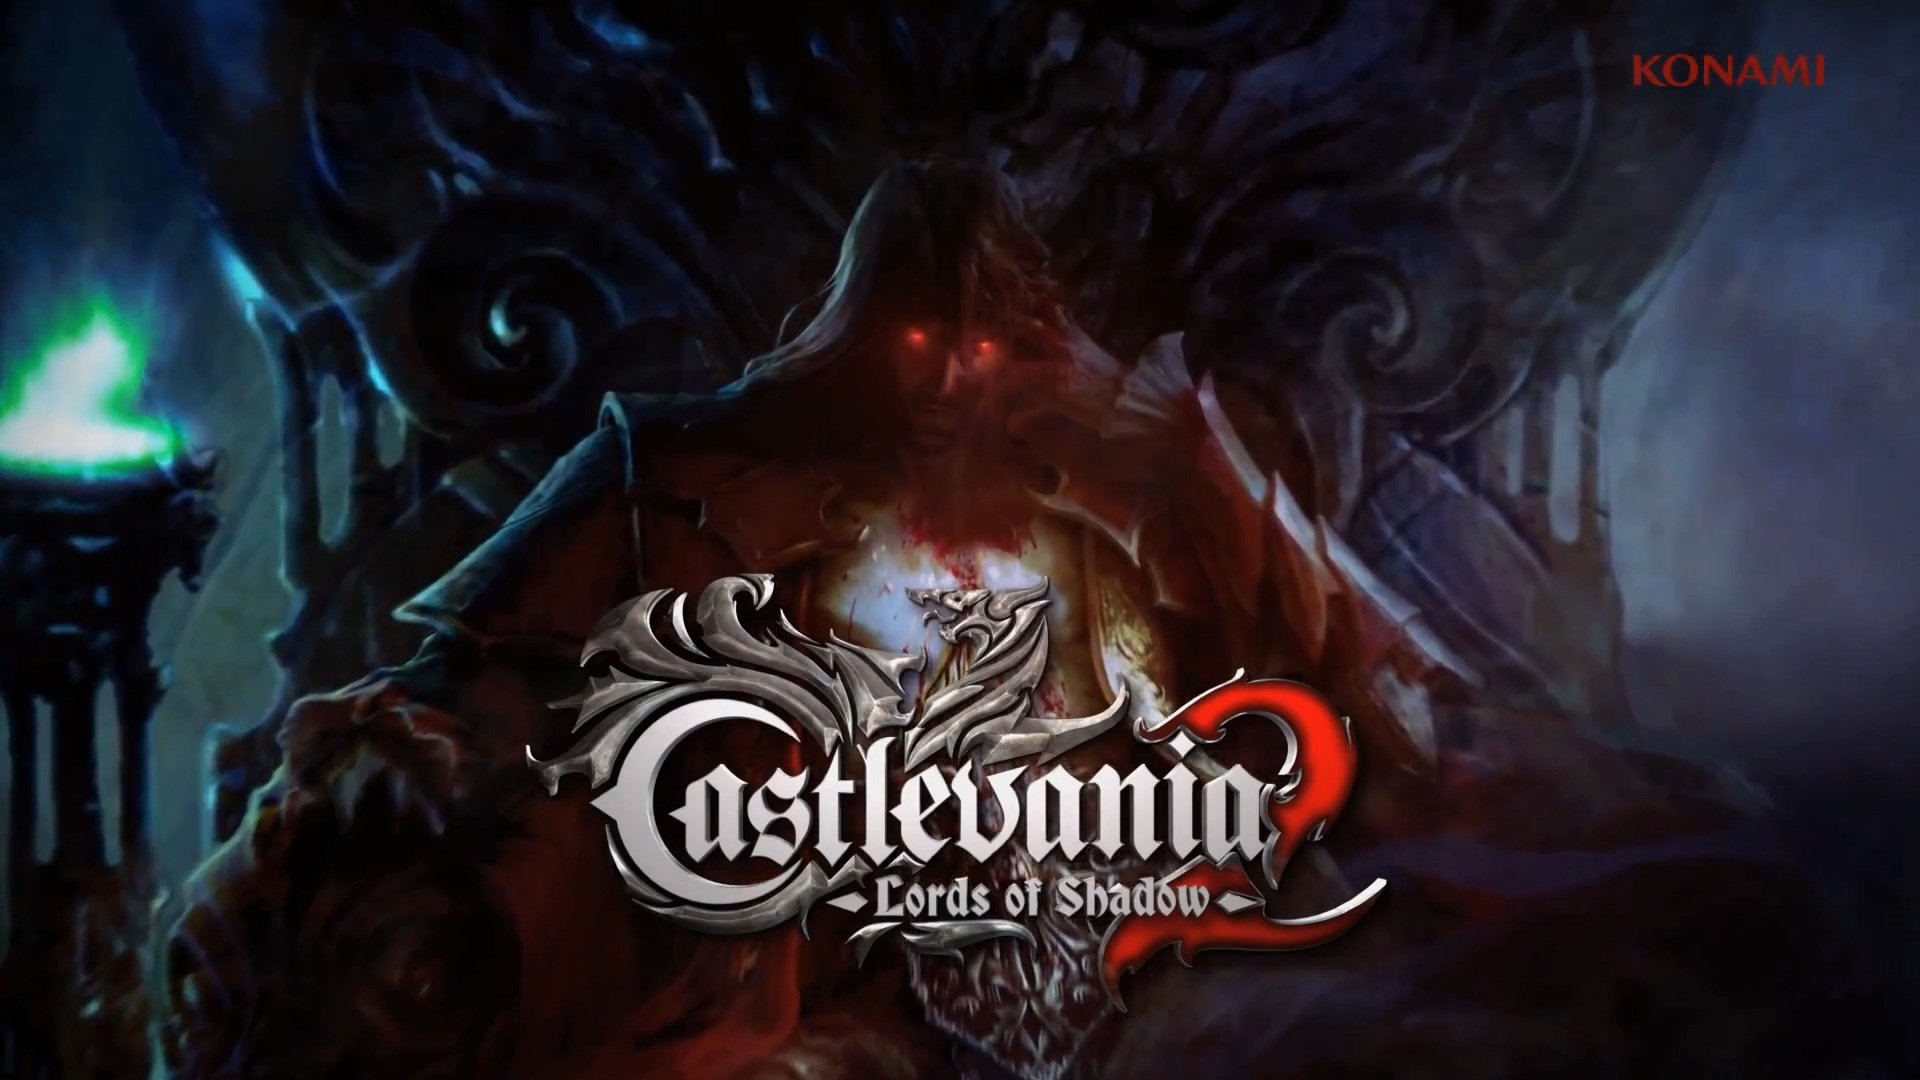 Castlevania, Castlevania: Lords of Shadow 2 Wallpaper